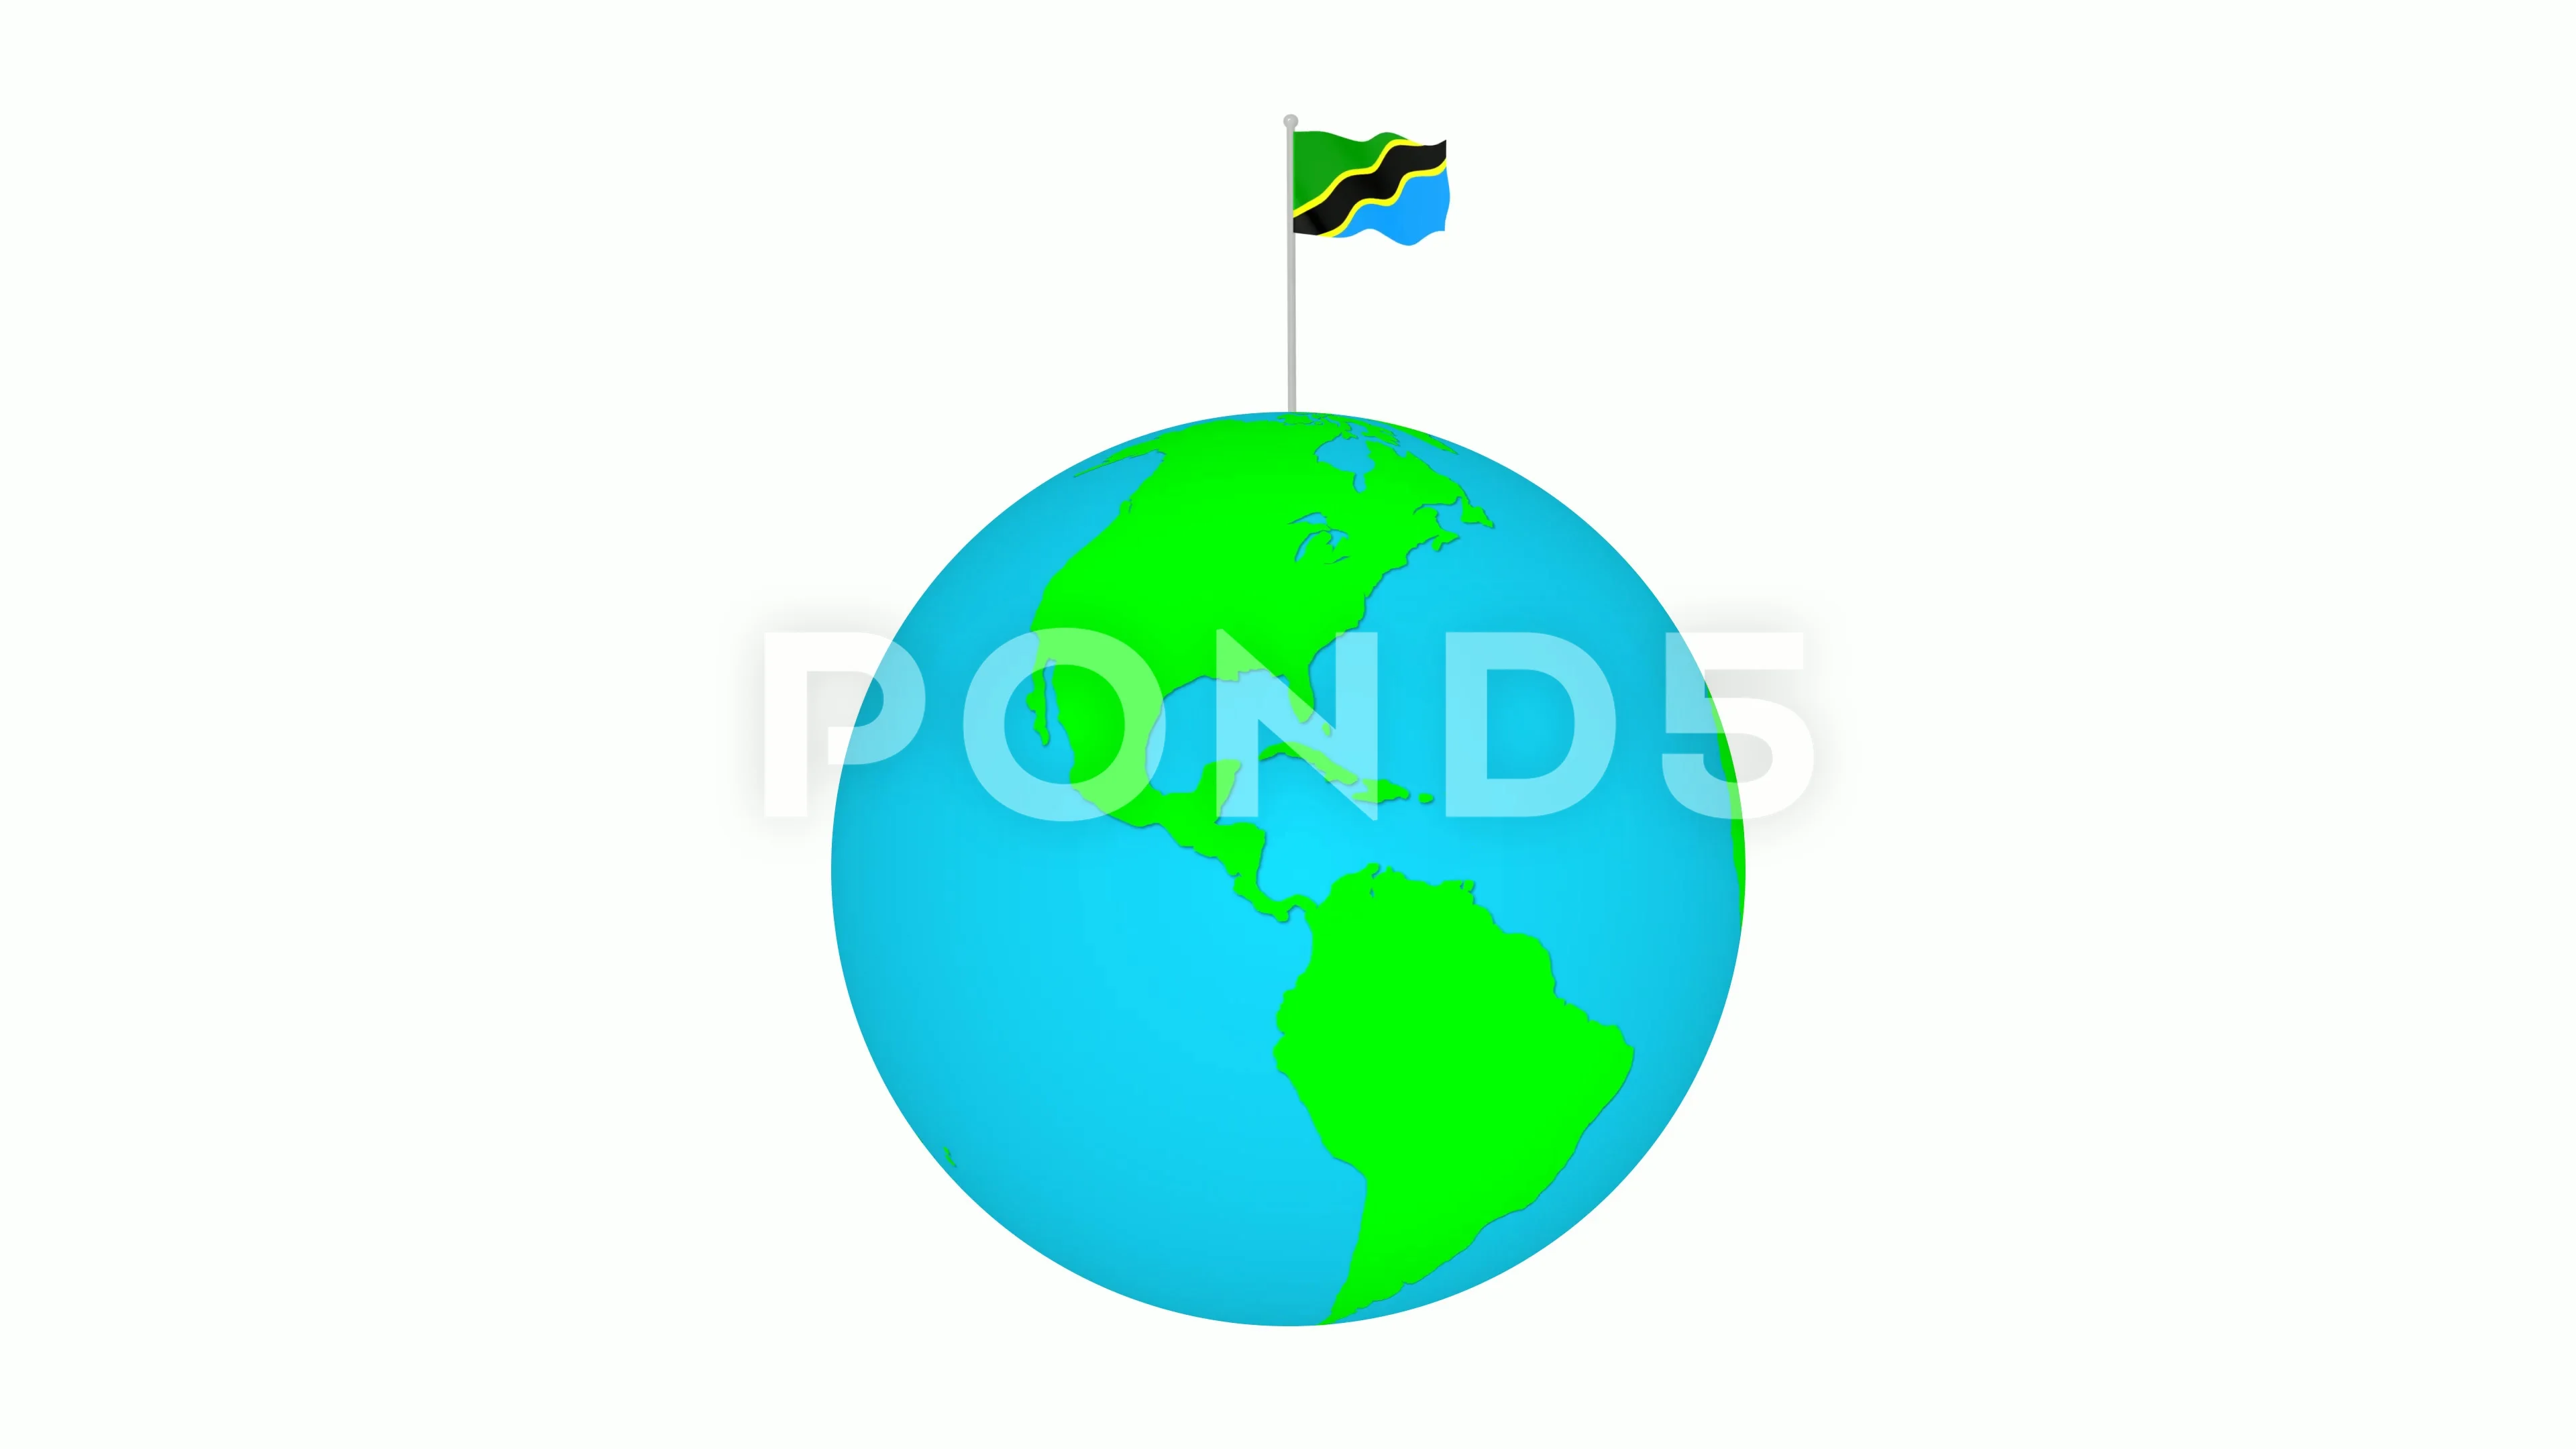 Hãy khám phá cờ Tanzania hoạt hình đầy màu sắc với những hình ảnh đẹp tuyệt vời. Chiêm ngưỡng những điểm cộng của quốc gia này và cảm nhận niềm tự hào khi một lần được đến thăm đất nước này.